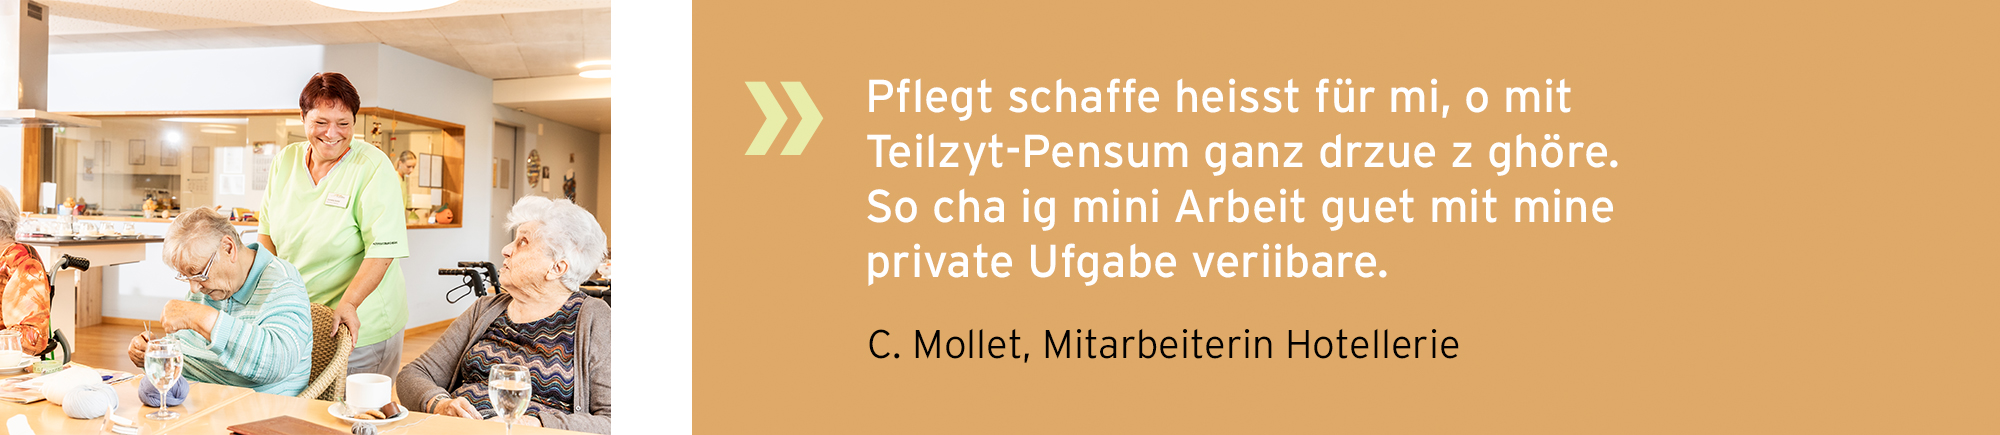 alterssitz_buechibaerg_slider_statements_Pflegt_schaffe_Mollet